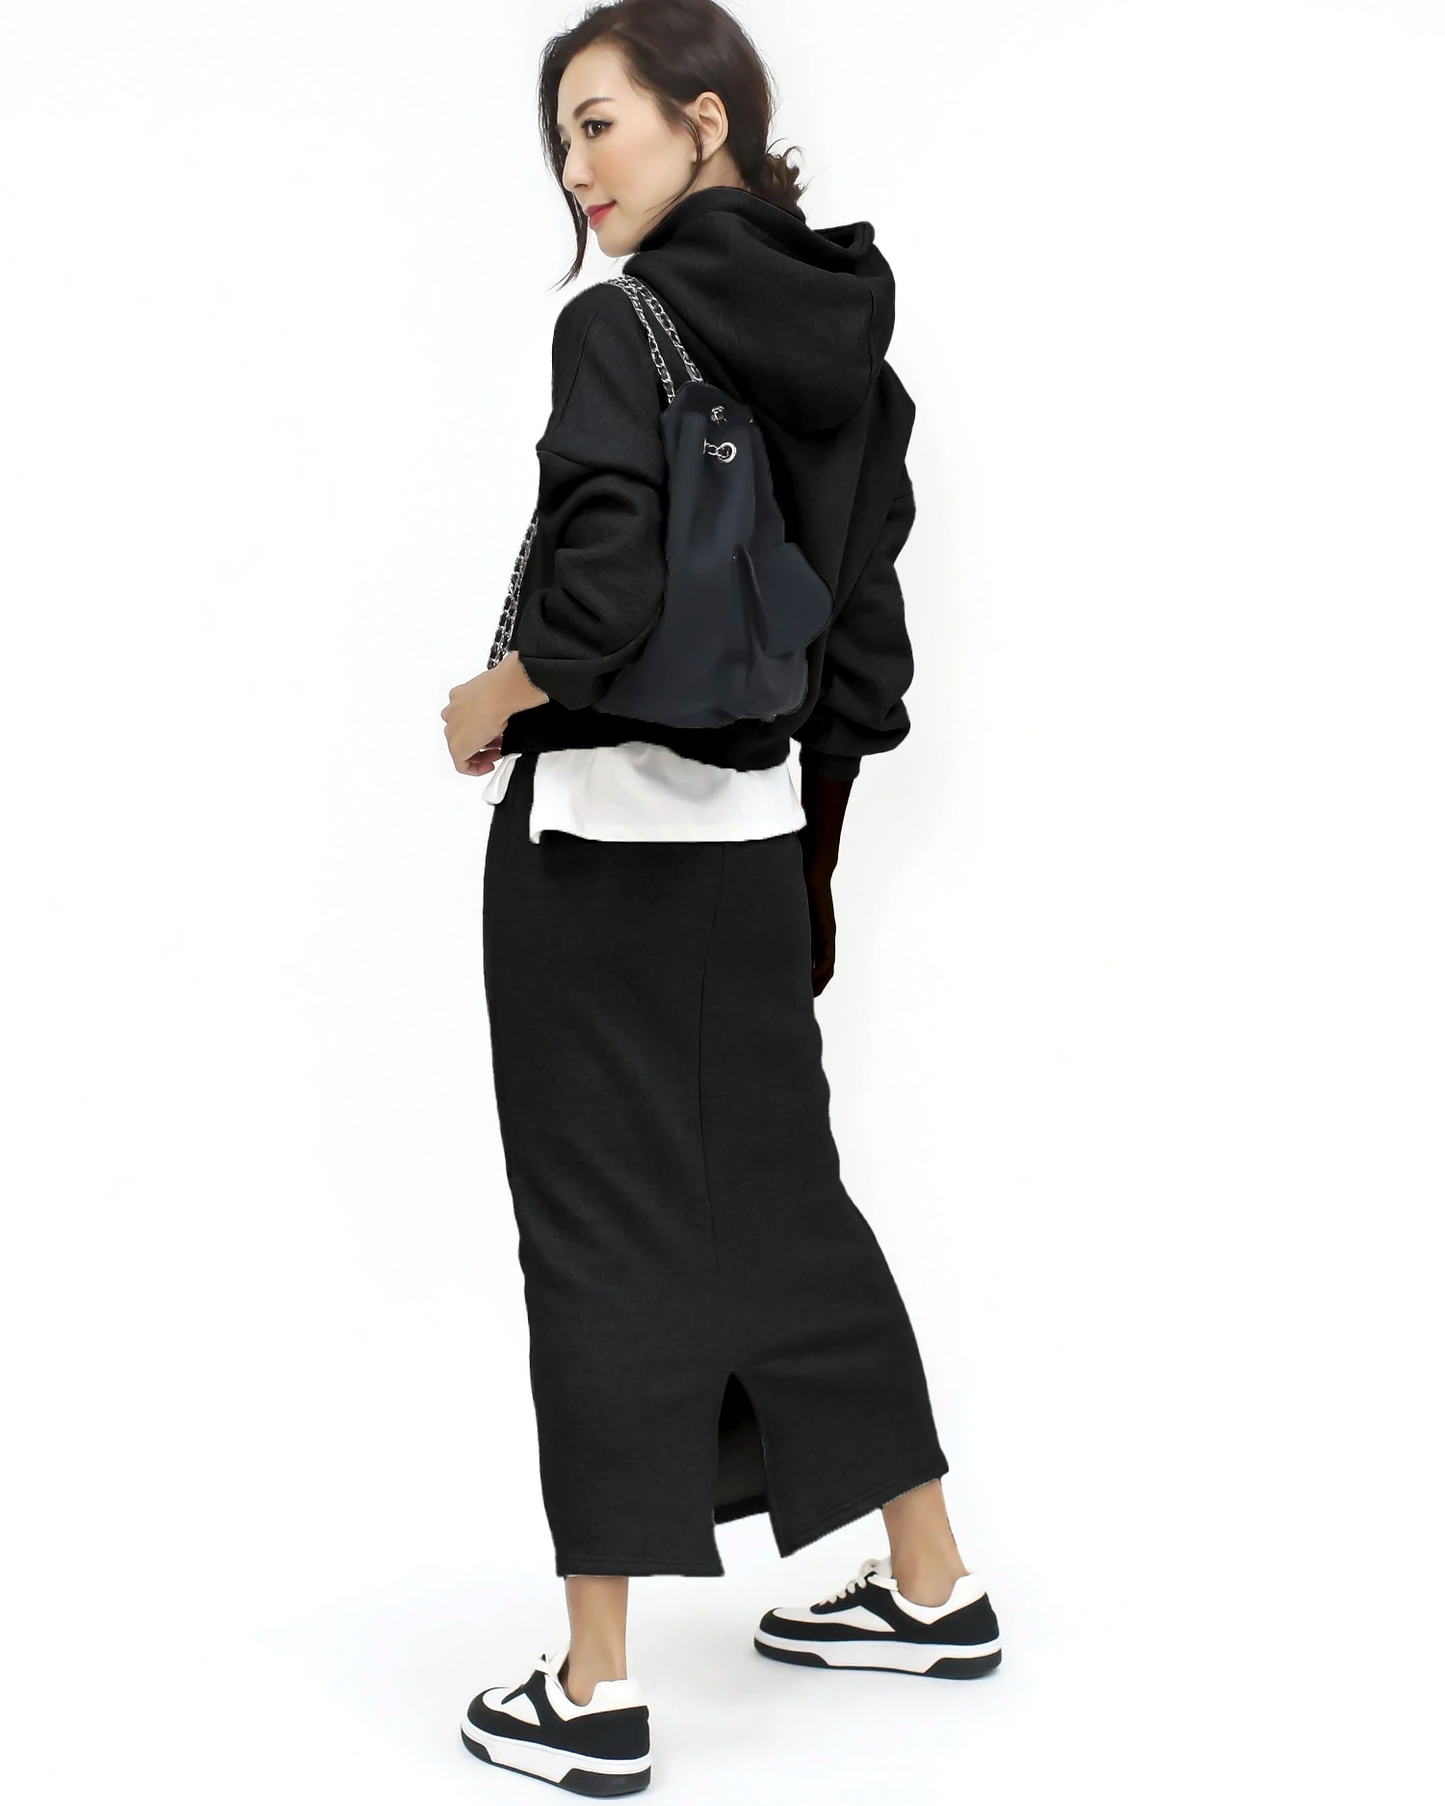 black embellished hoodie soft sweatshirt & skirt set *pre-order*